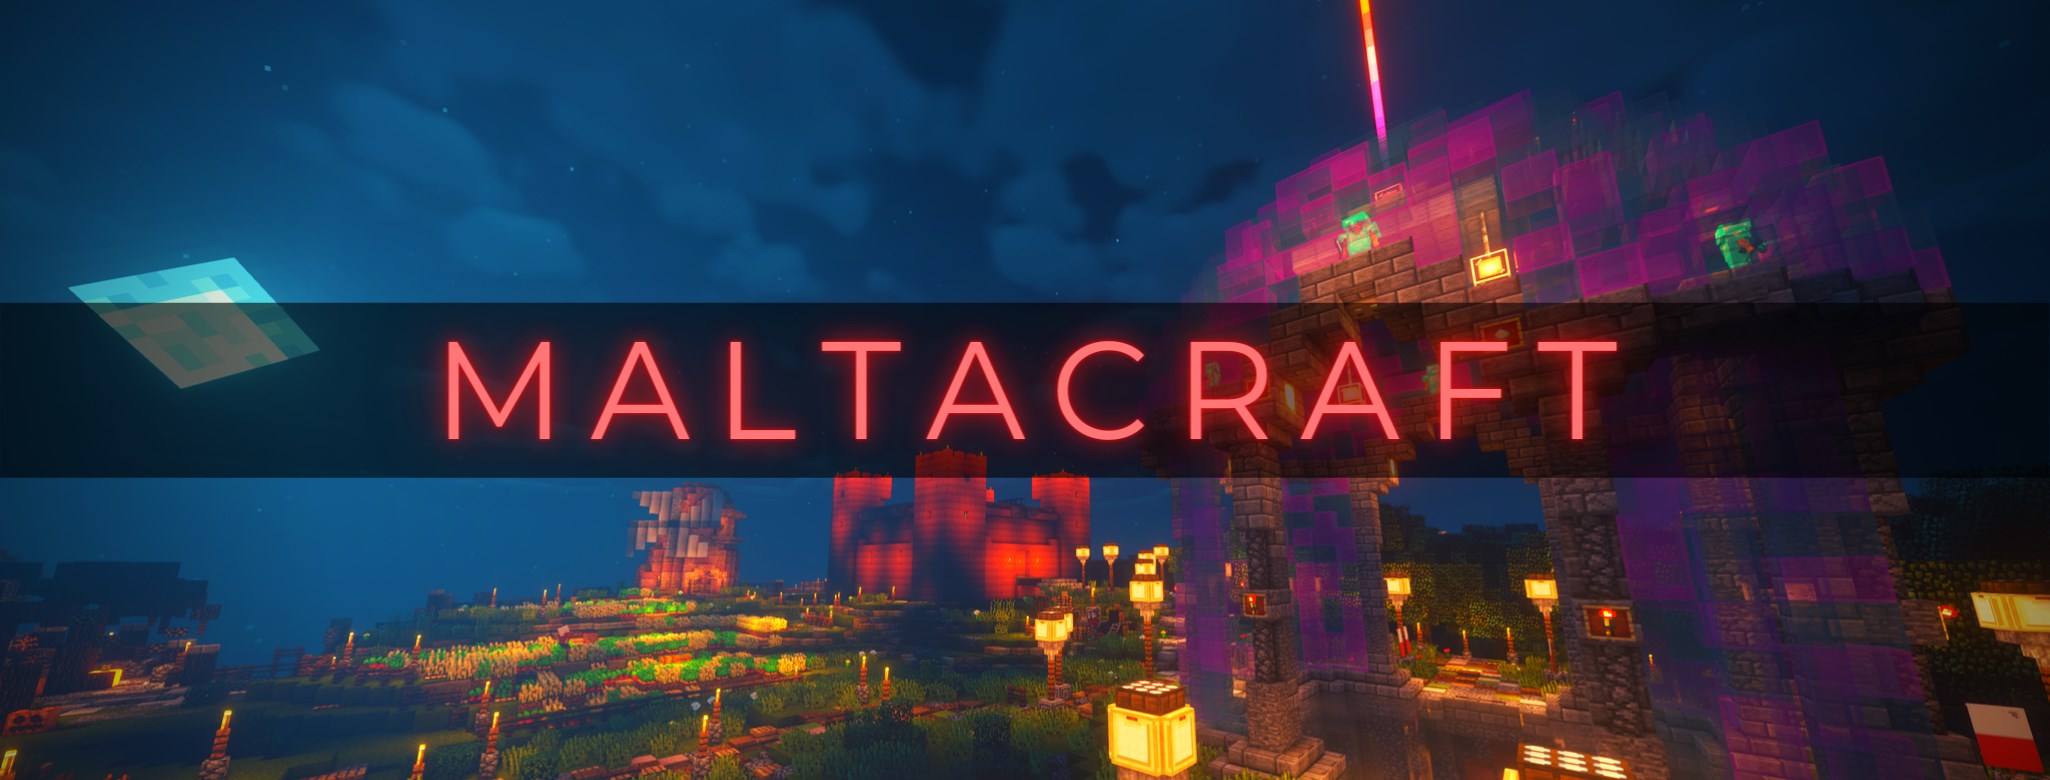 Maltacraft.net banner